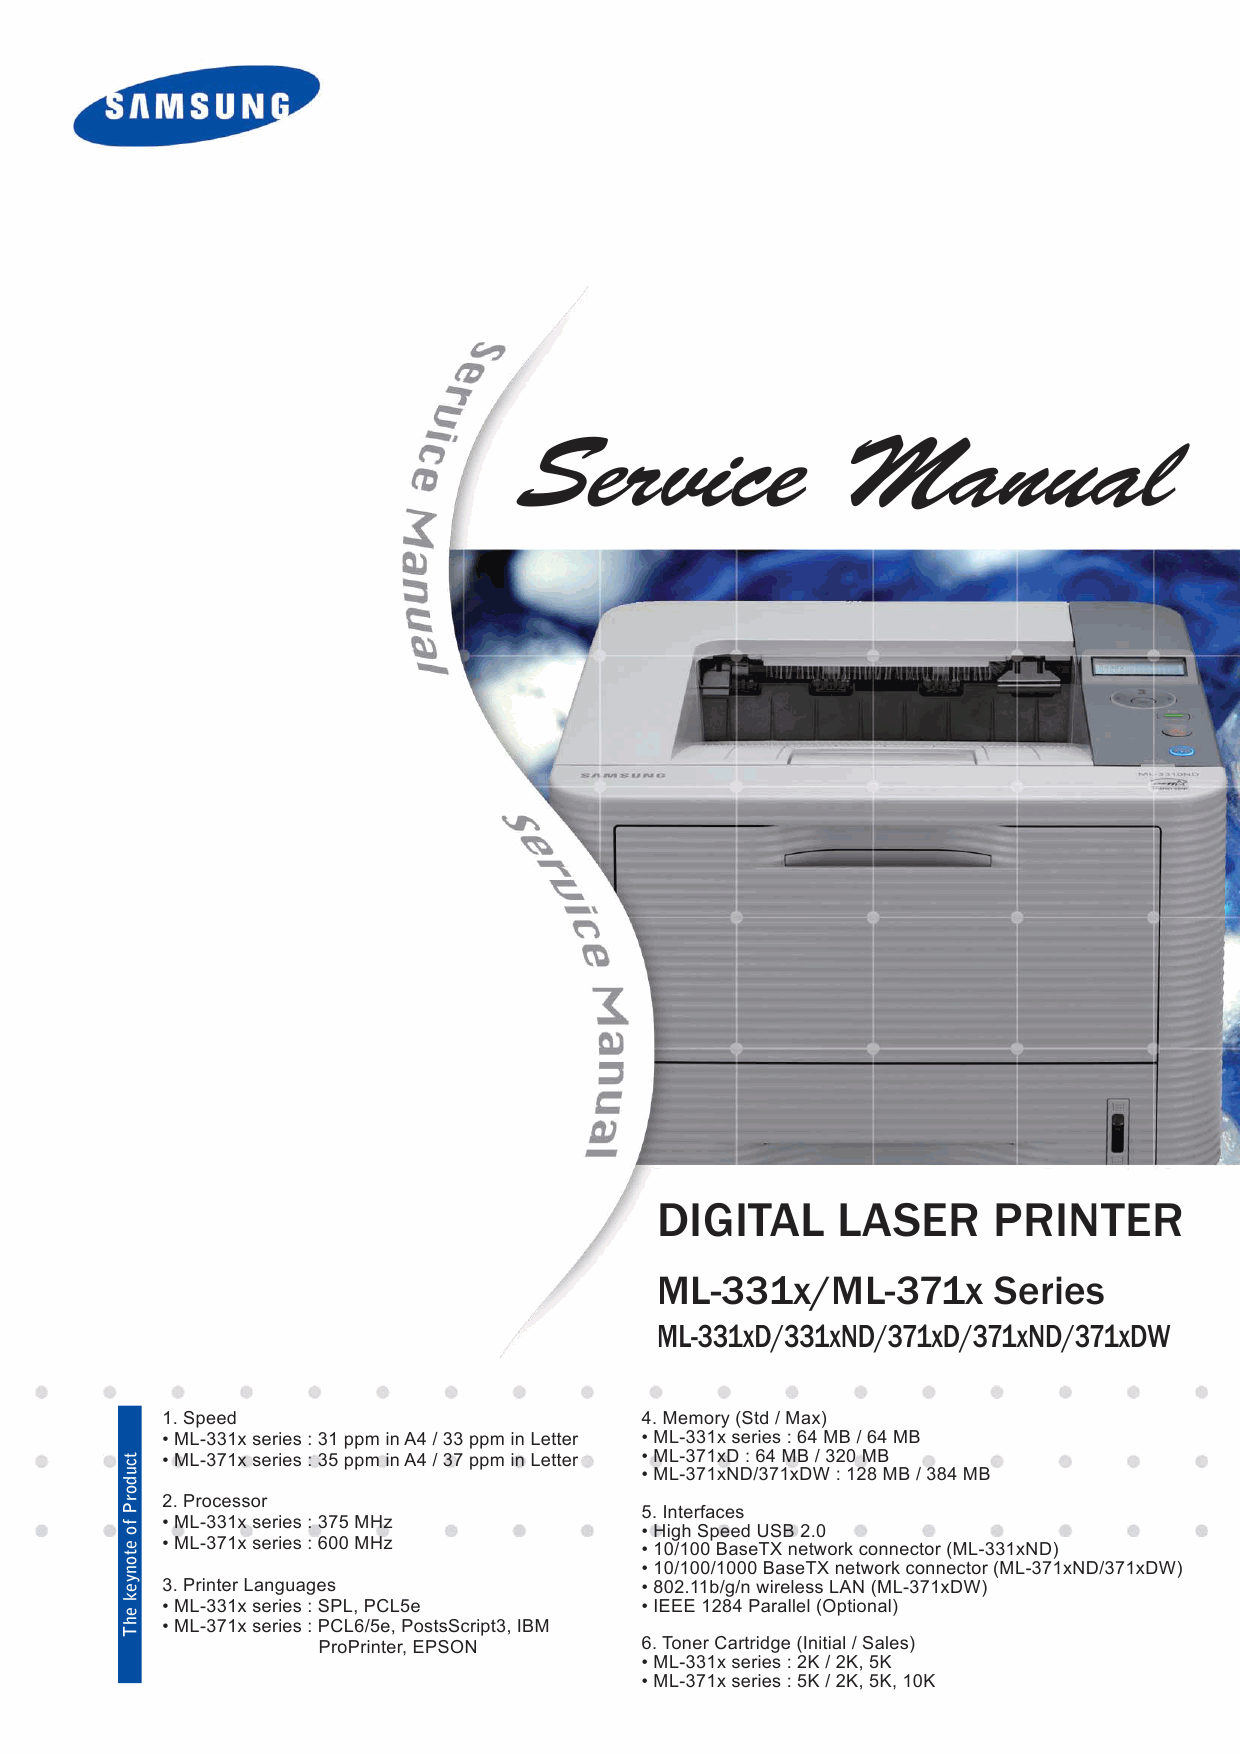 Samsung Digital-Laser-Printer ML-331x 371x 331xD 371xD 371xDW Service Manual-1